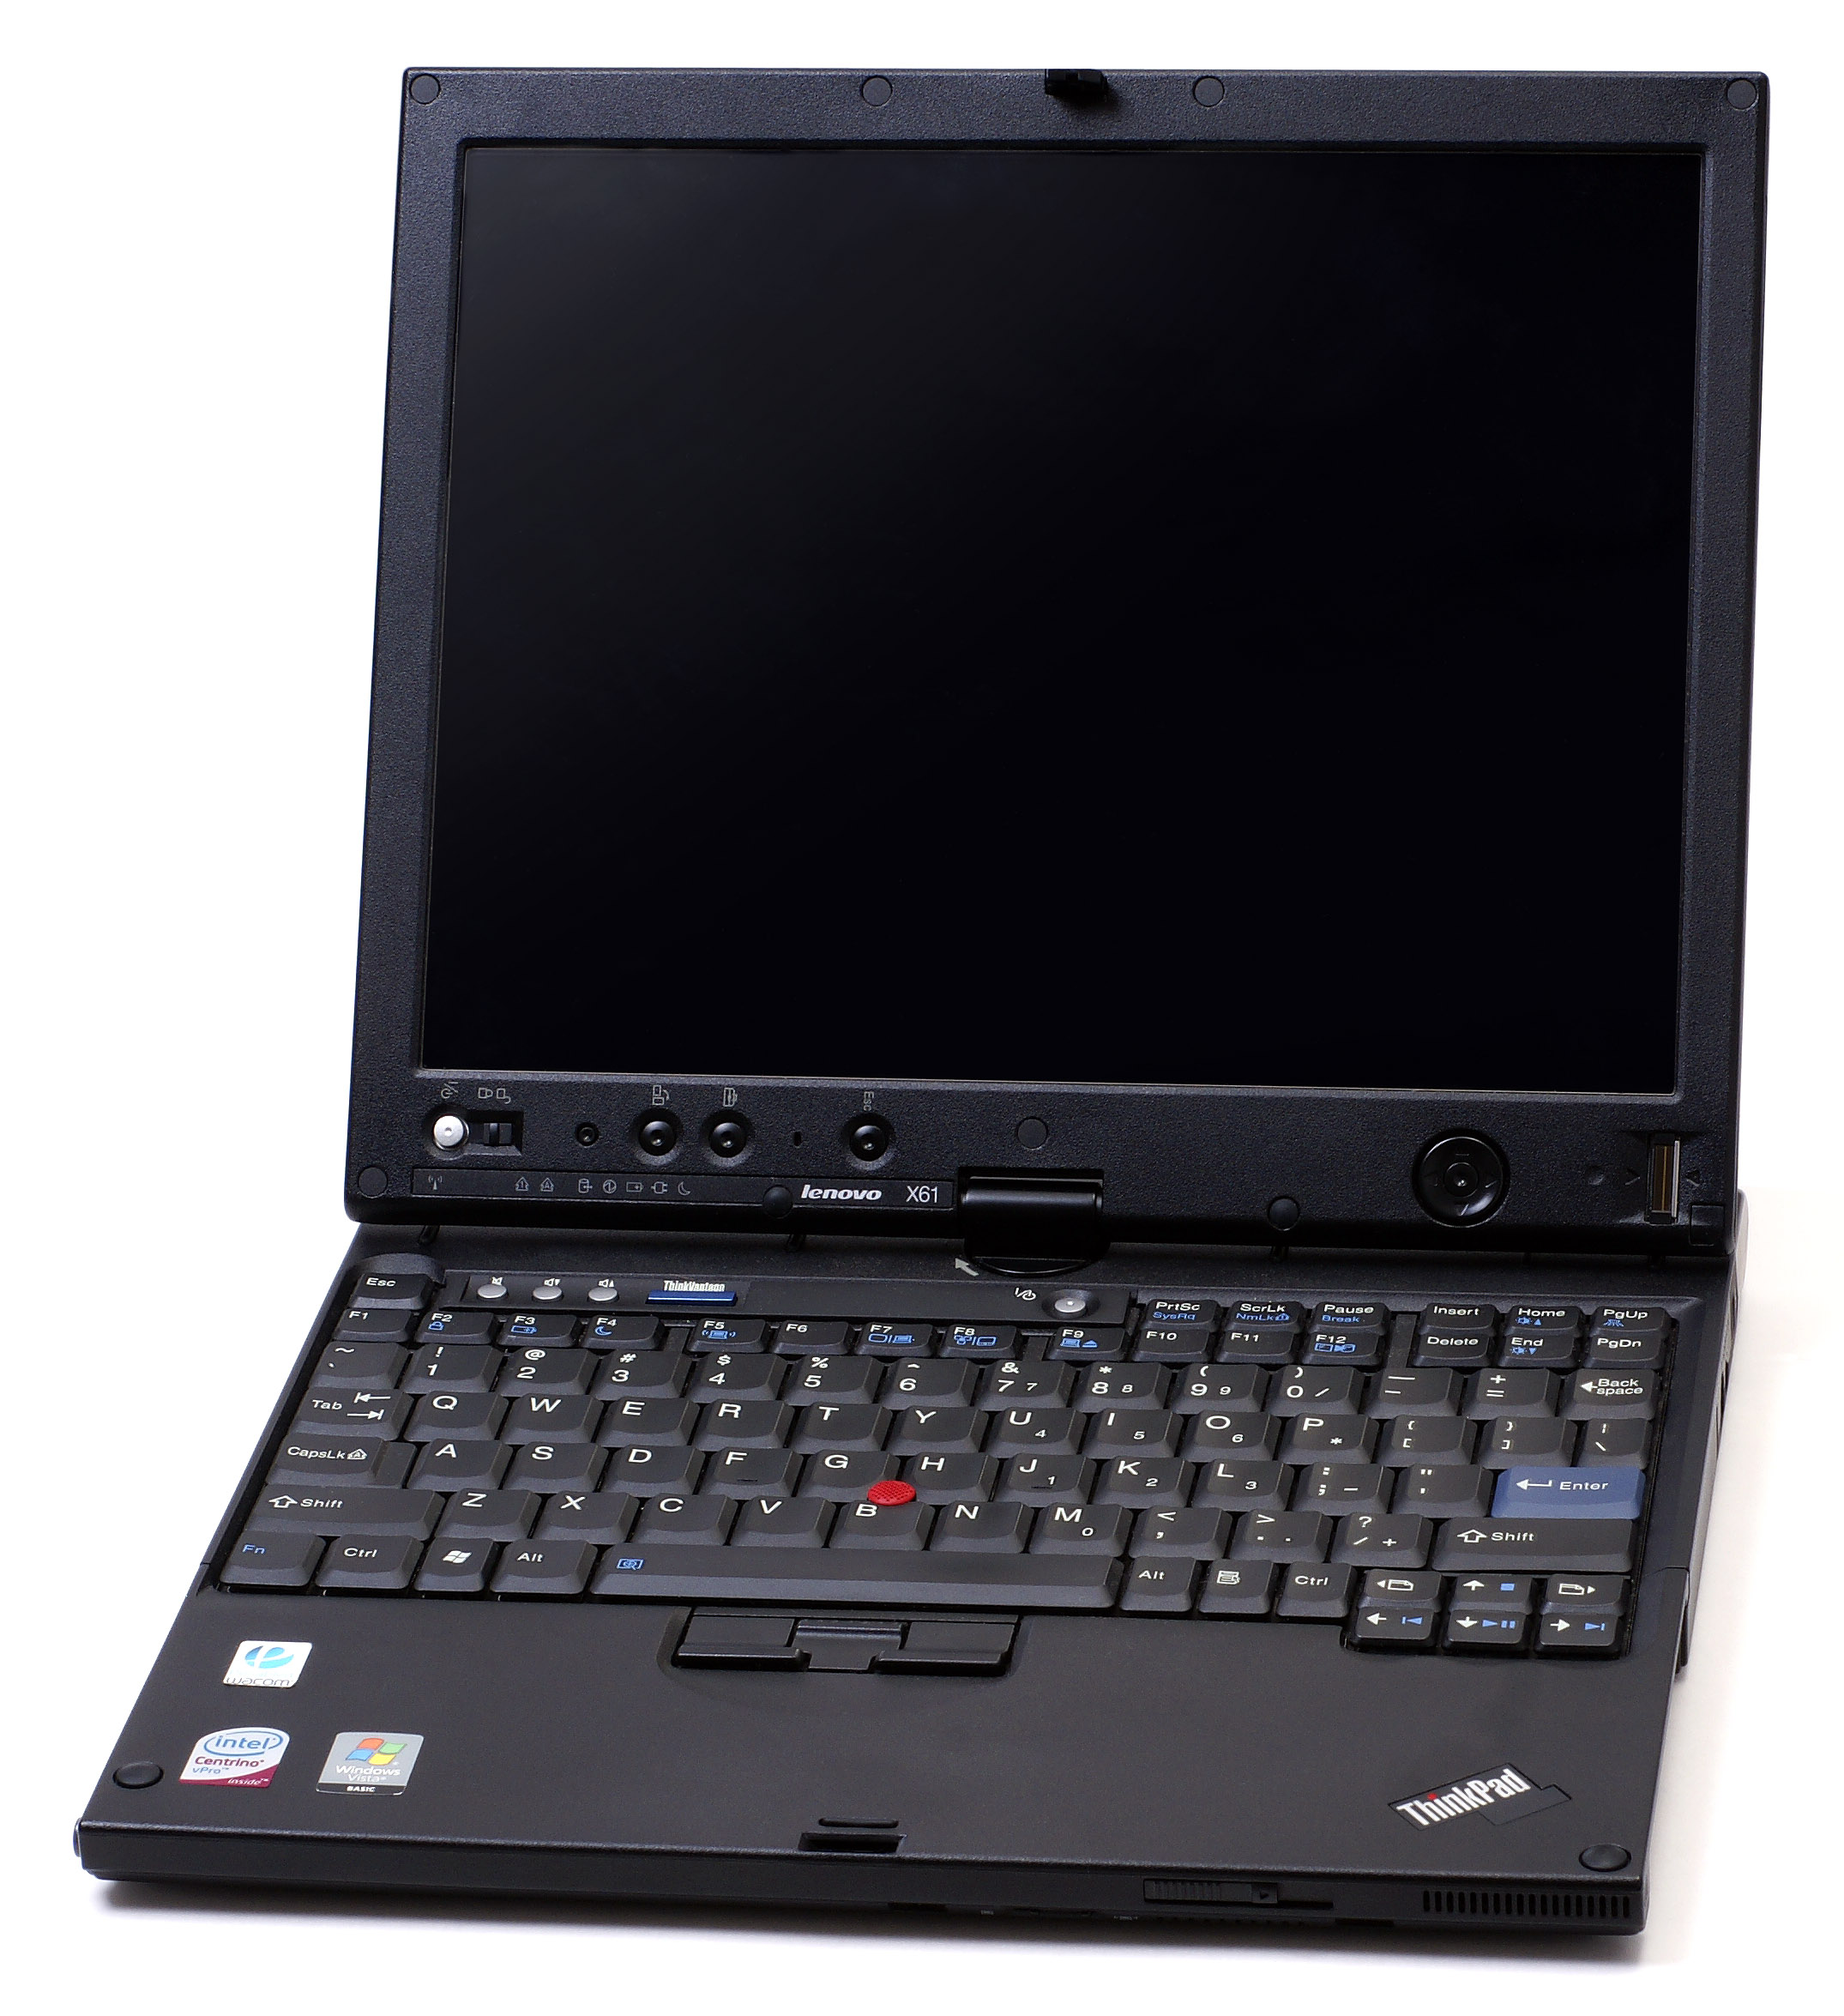 Thinkpad. Lenovo THINKPAD x61. Lenovo THINKPAD 2005. Lenovo THINKPAD 2007. THINKPAD x61 Tablet.